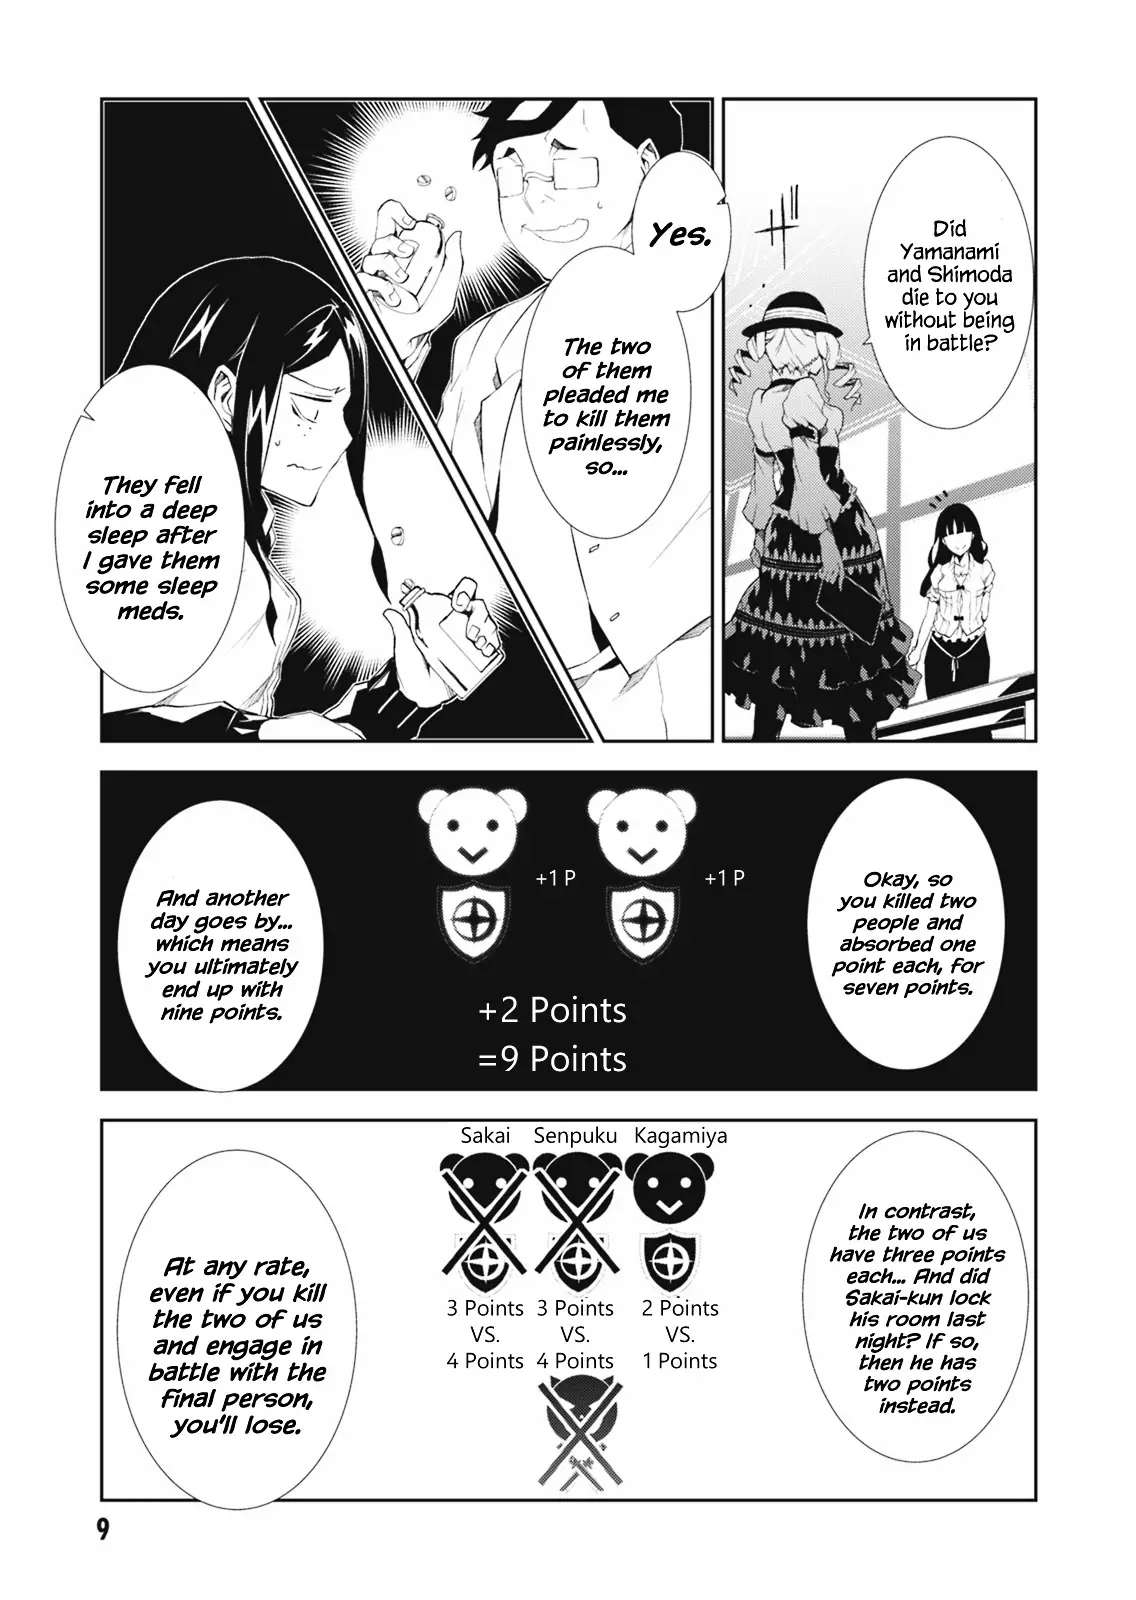 Read Rengoku Deadroll 1 - Oni Scan